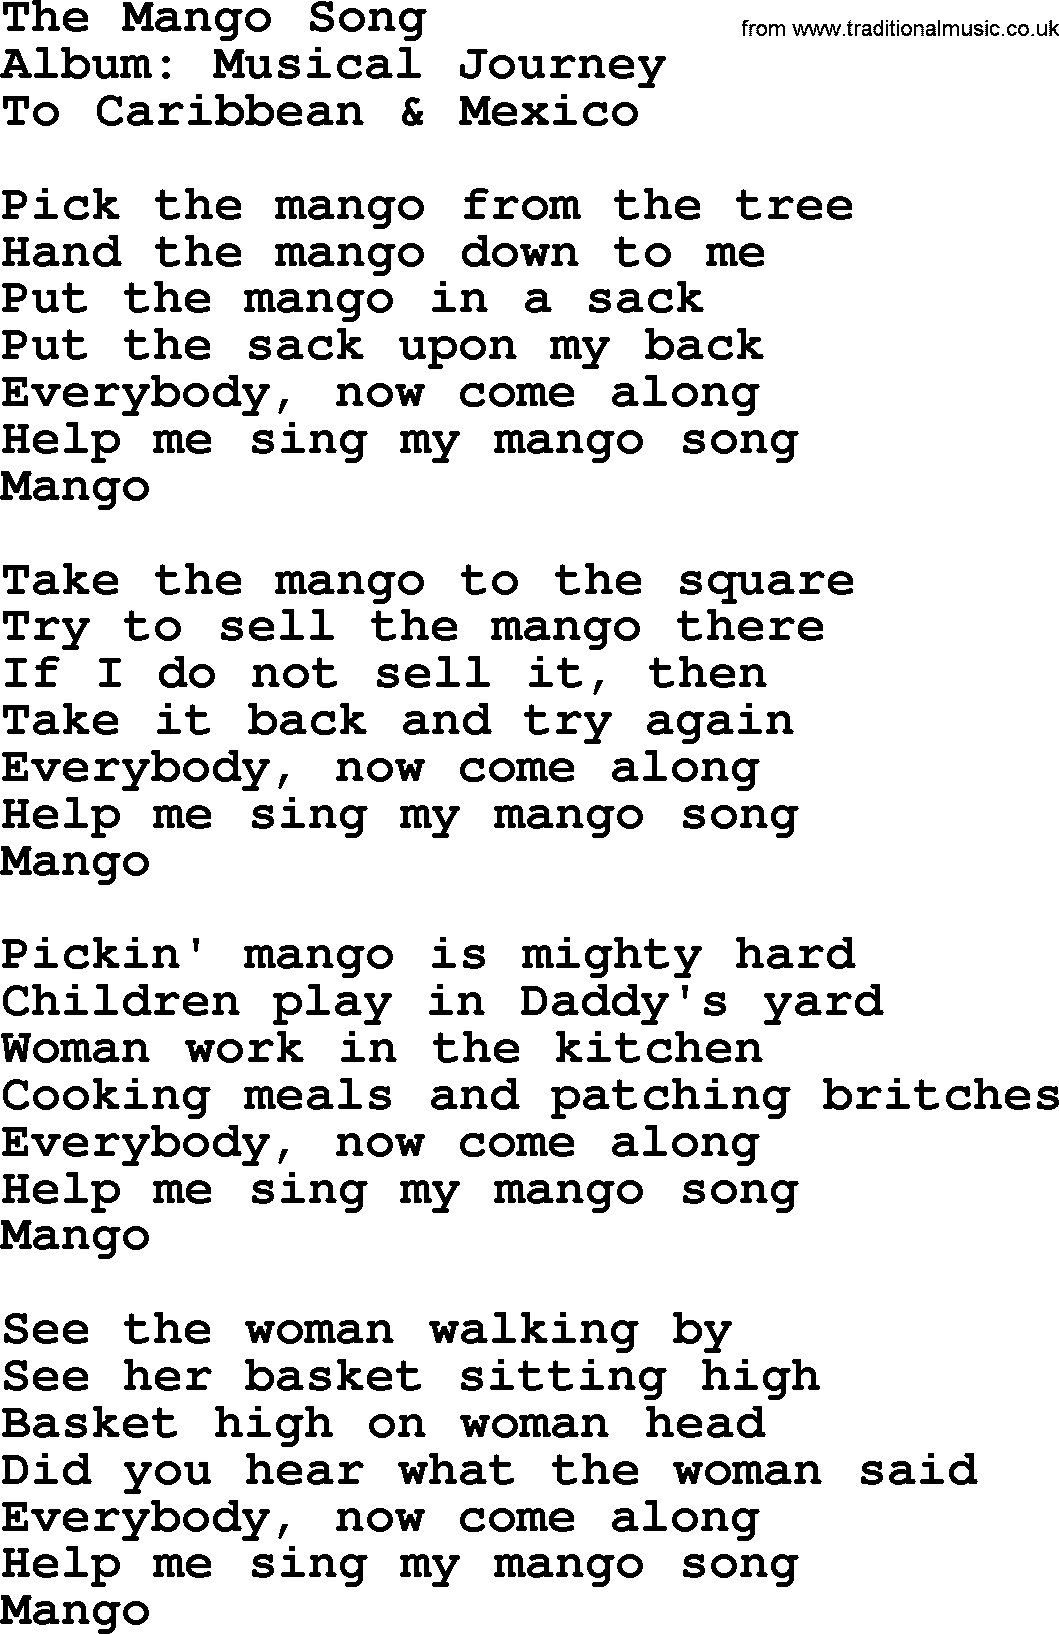 Marty Robbins song: The Mango Song, lyrics